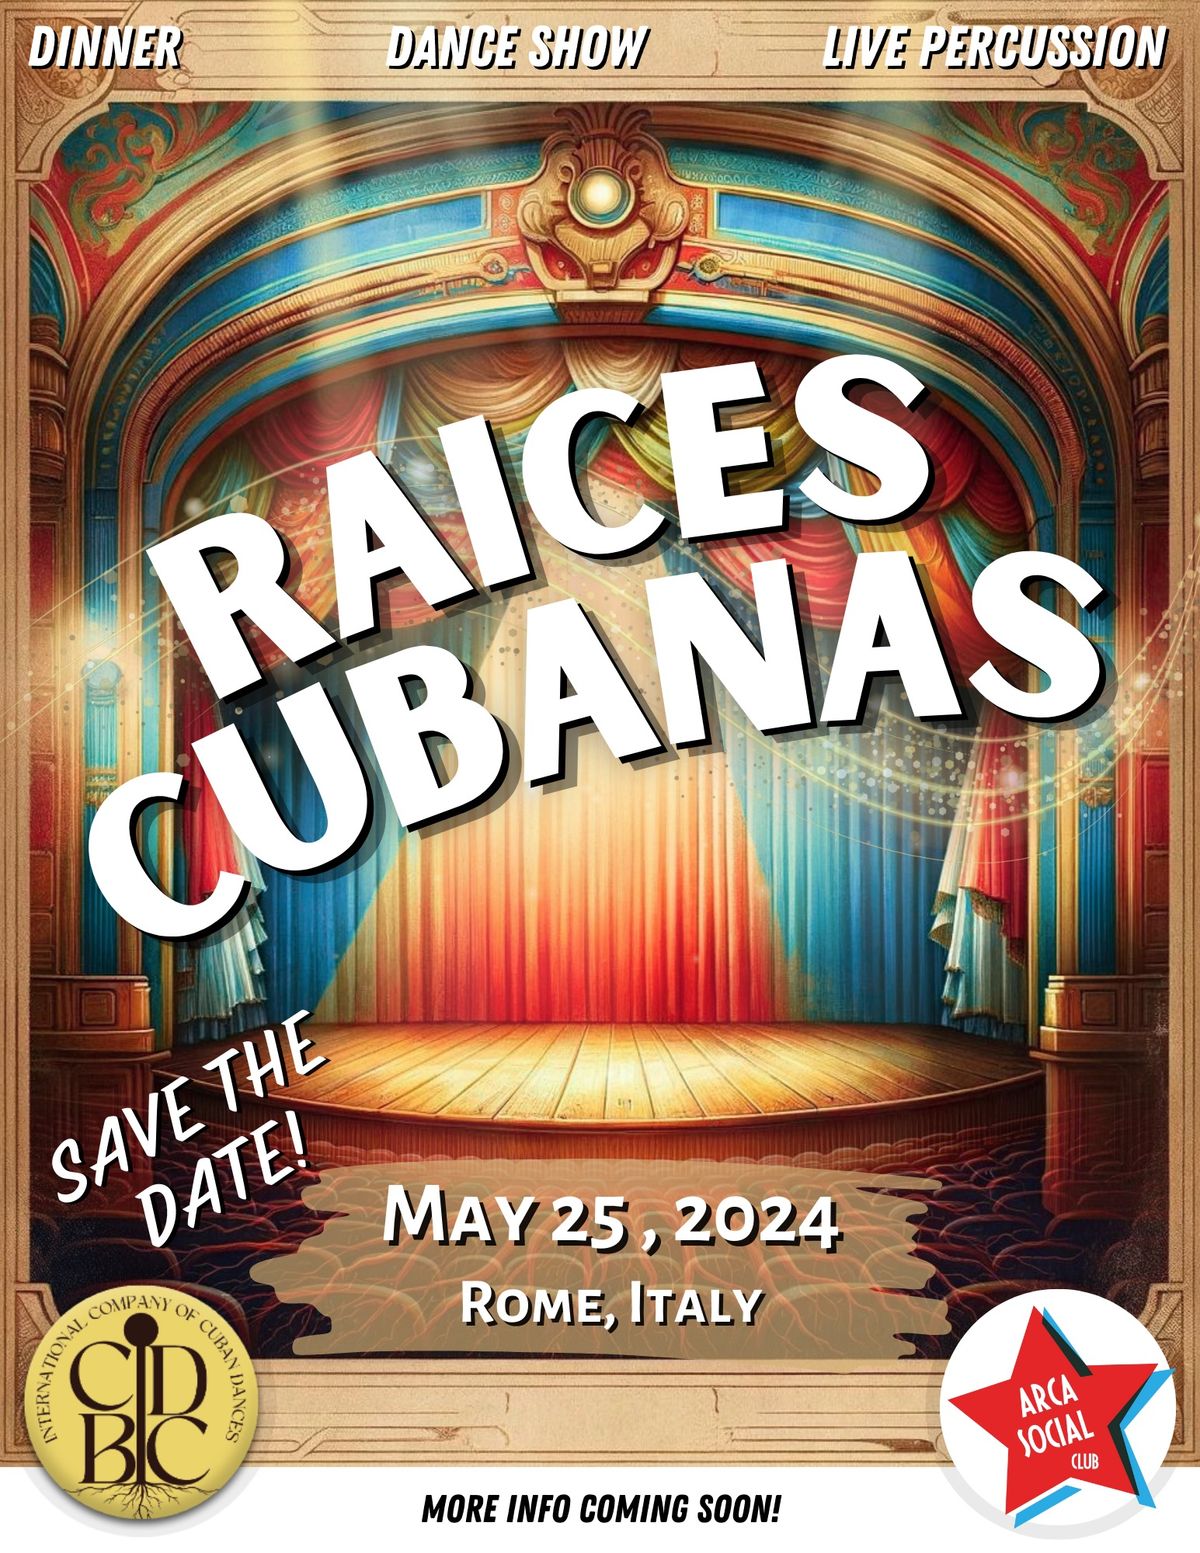 RAICES CUBANAS - The Performance 